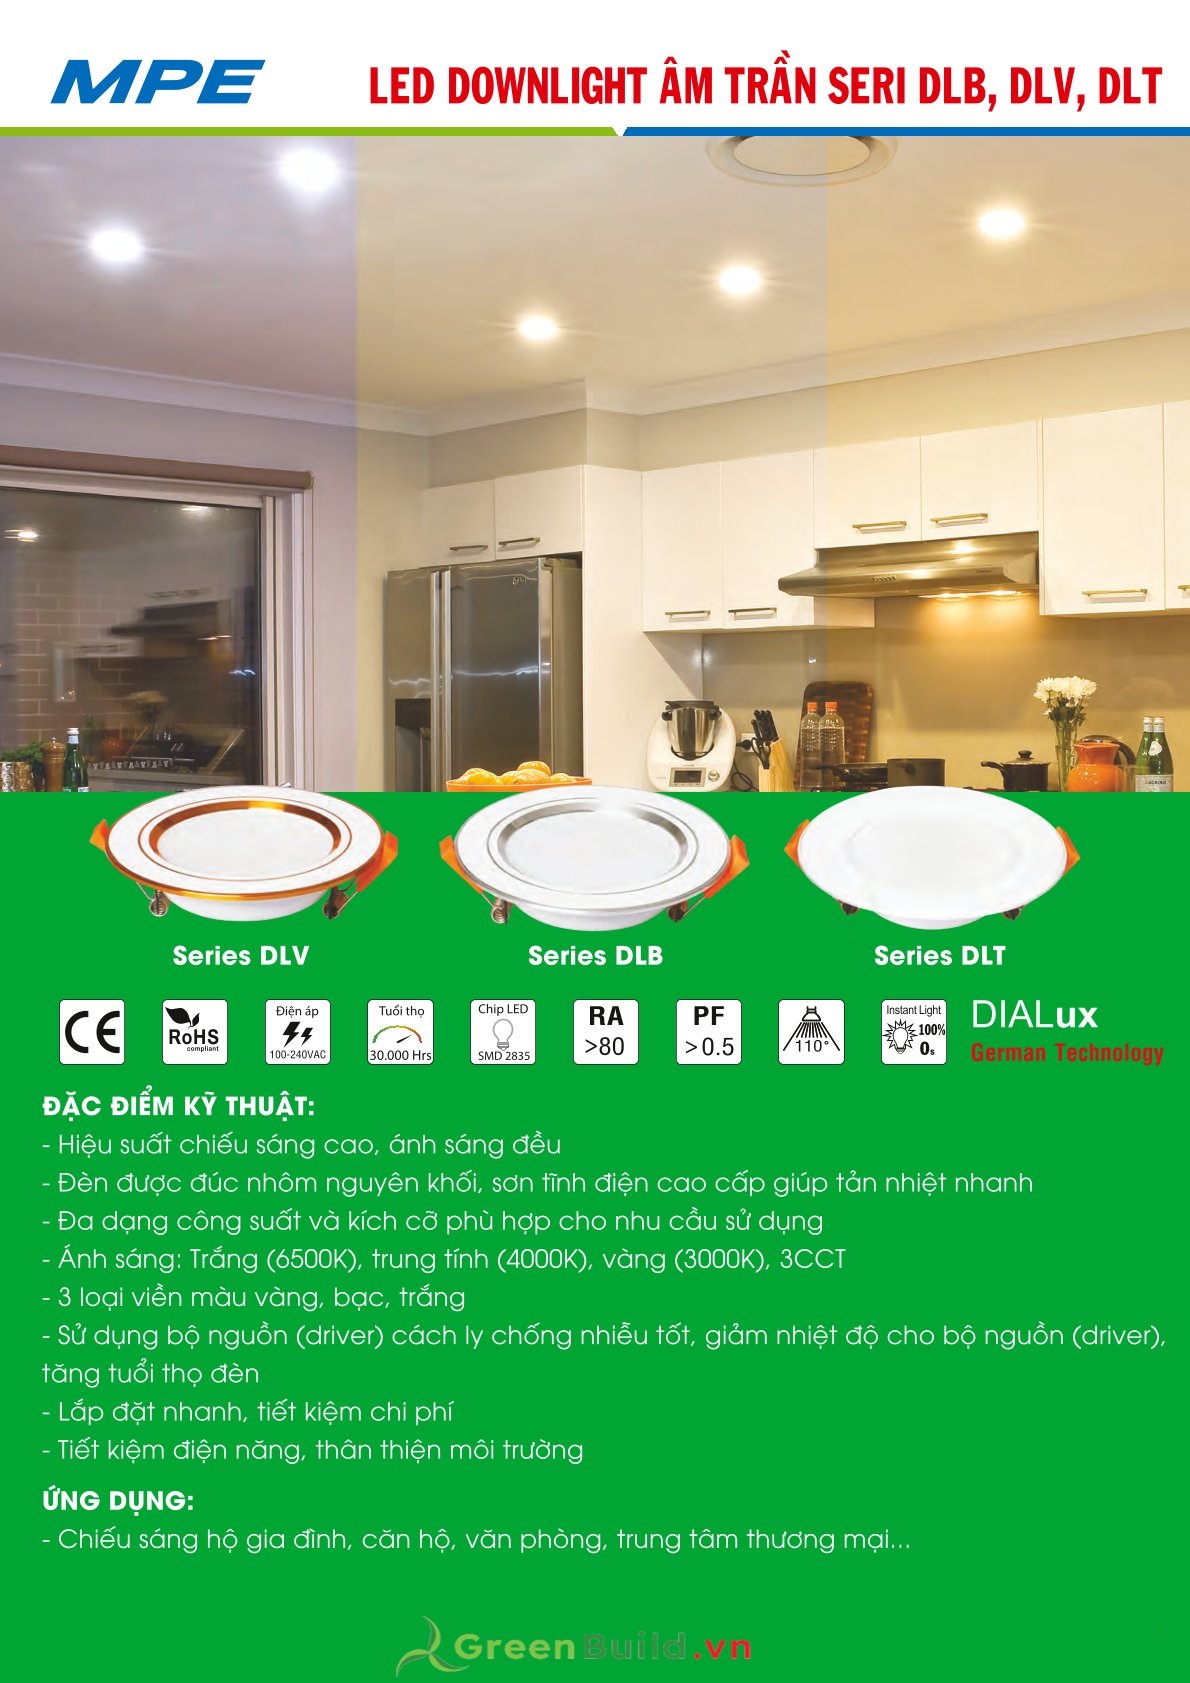 Greenbuild - Đèn LED downlight 3 màu MPE DLV 5W [DLV-5/3C], đèn LED đổi màu âm trần chất lượng cao, đèn LED MPE được bảo hành lâu dài